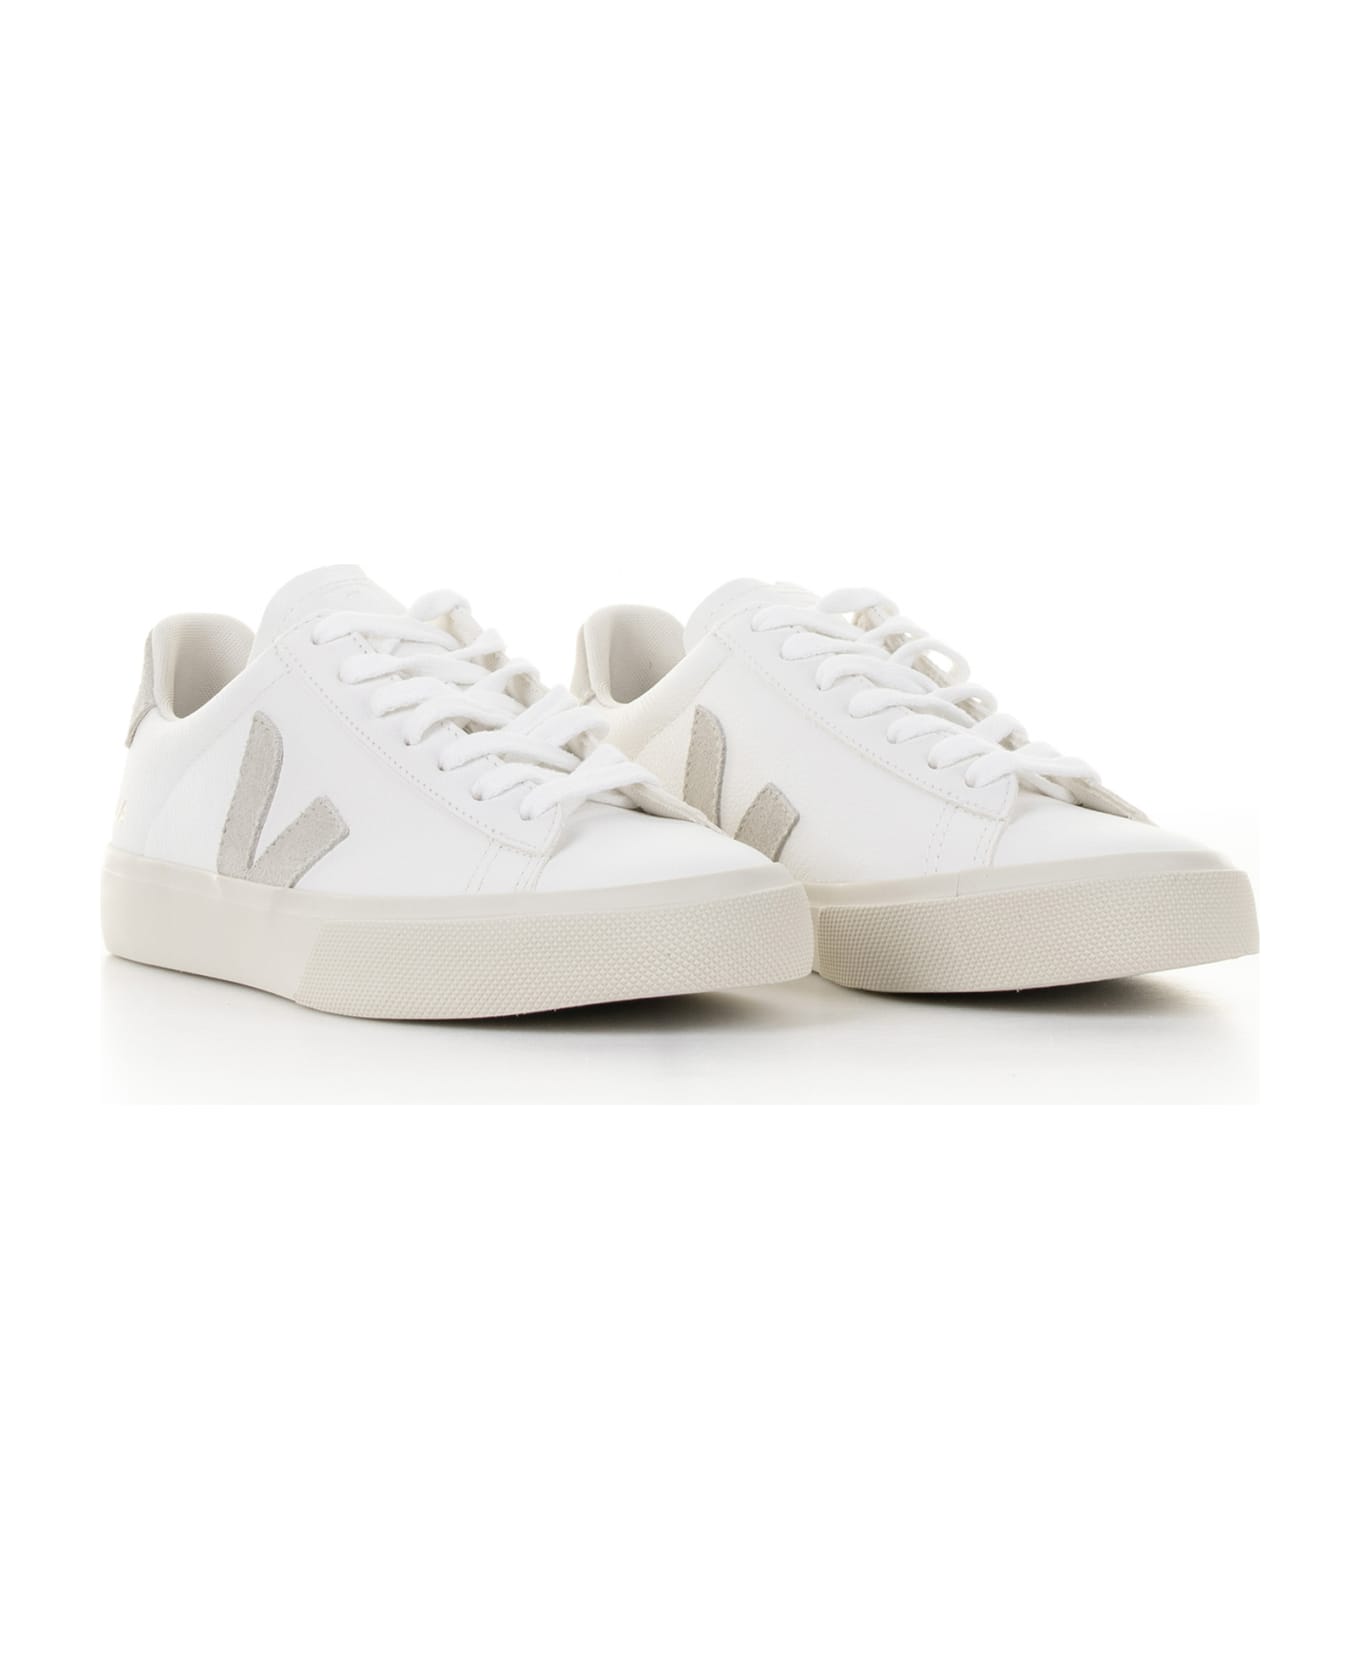 Veja Campo Sneaker In White Gray Leather For Men スニーカー